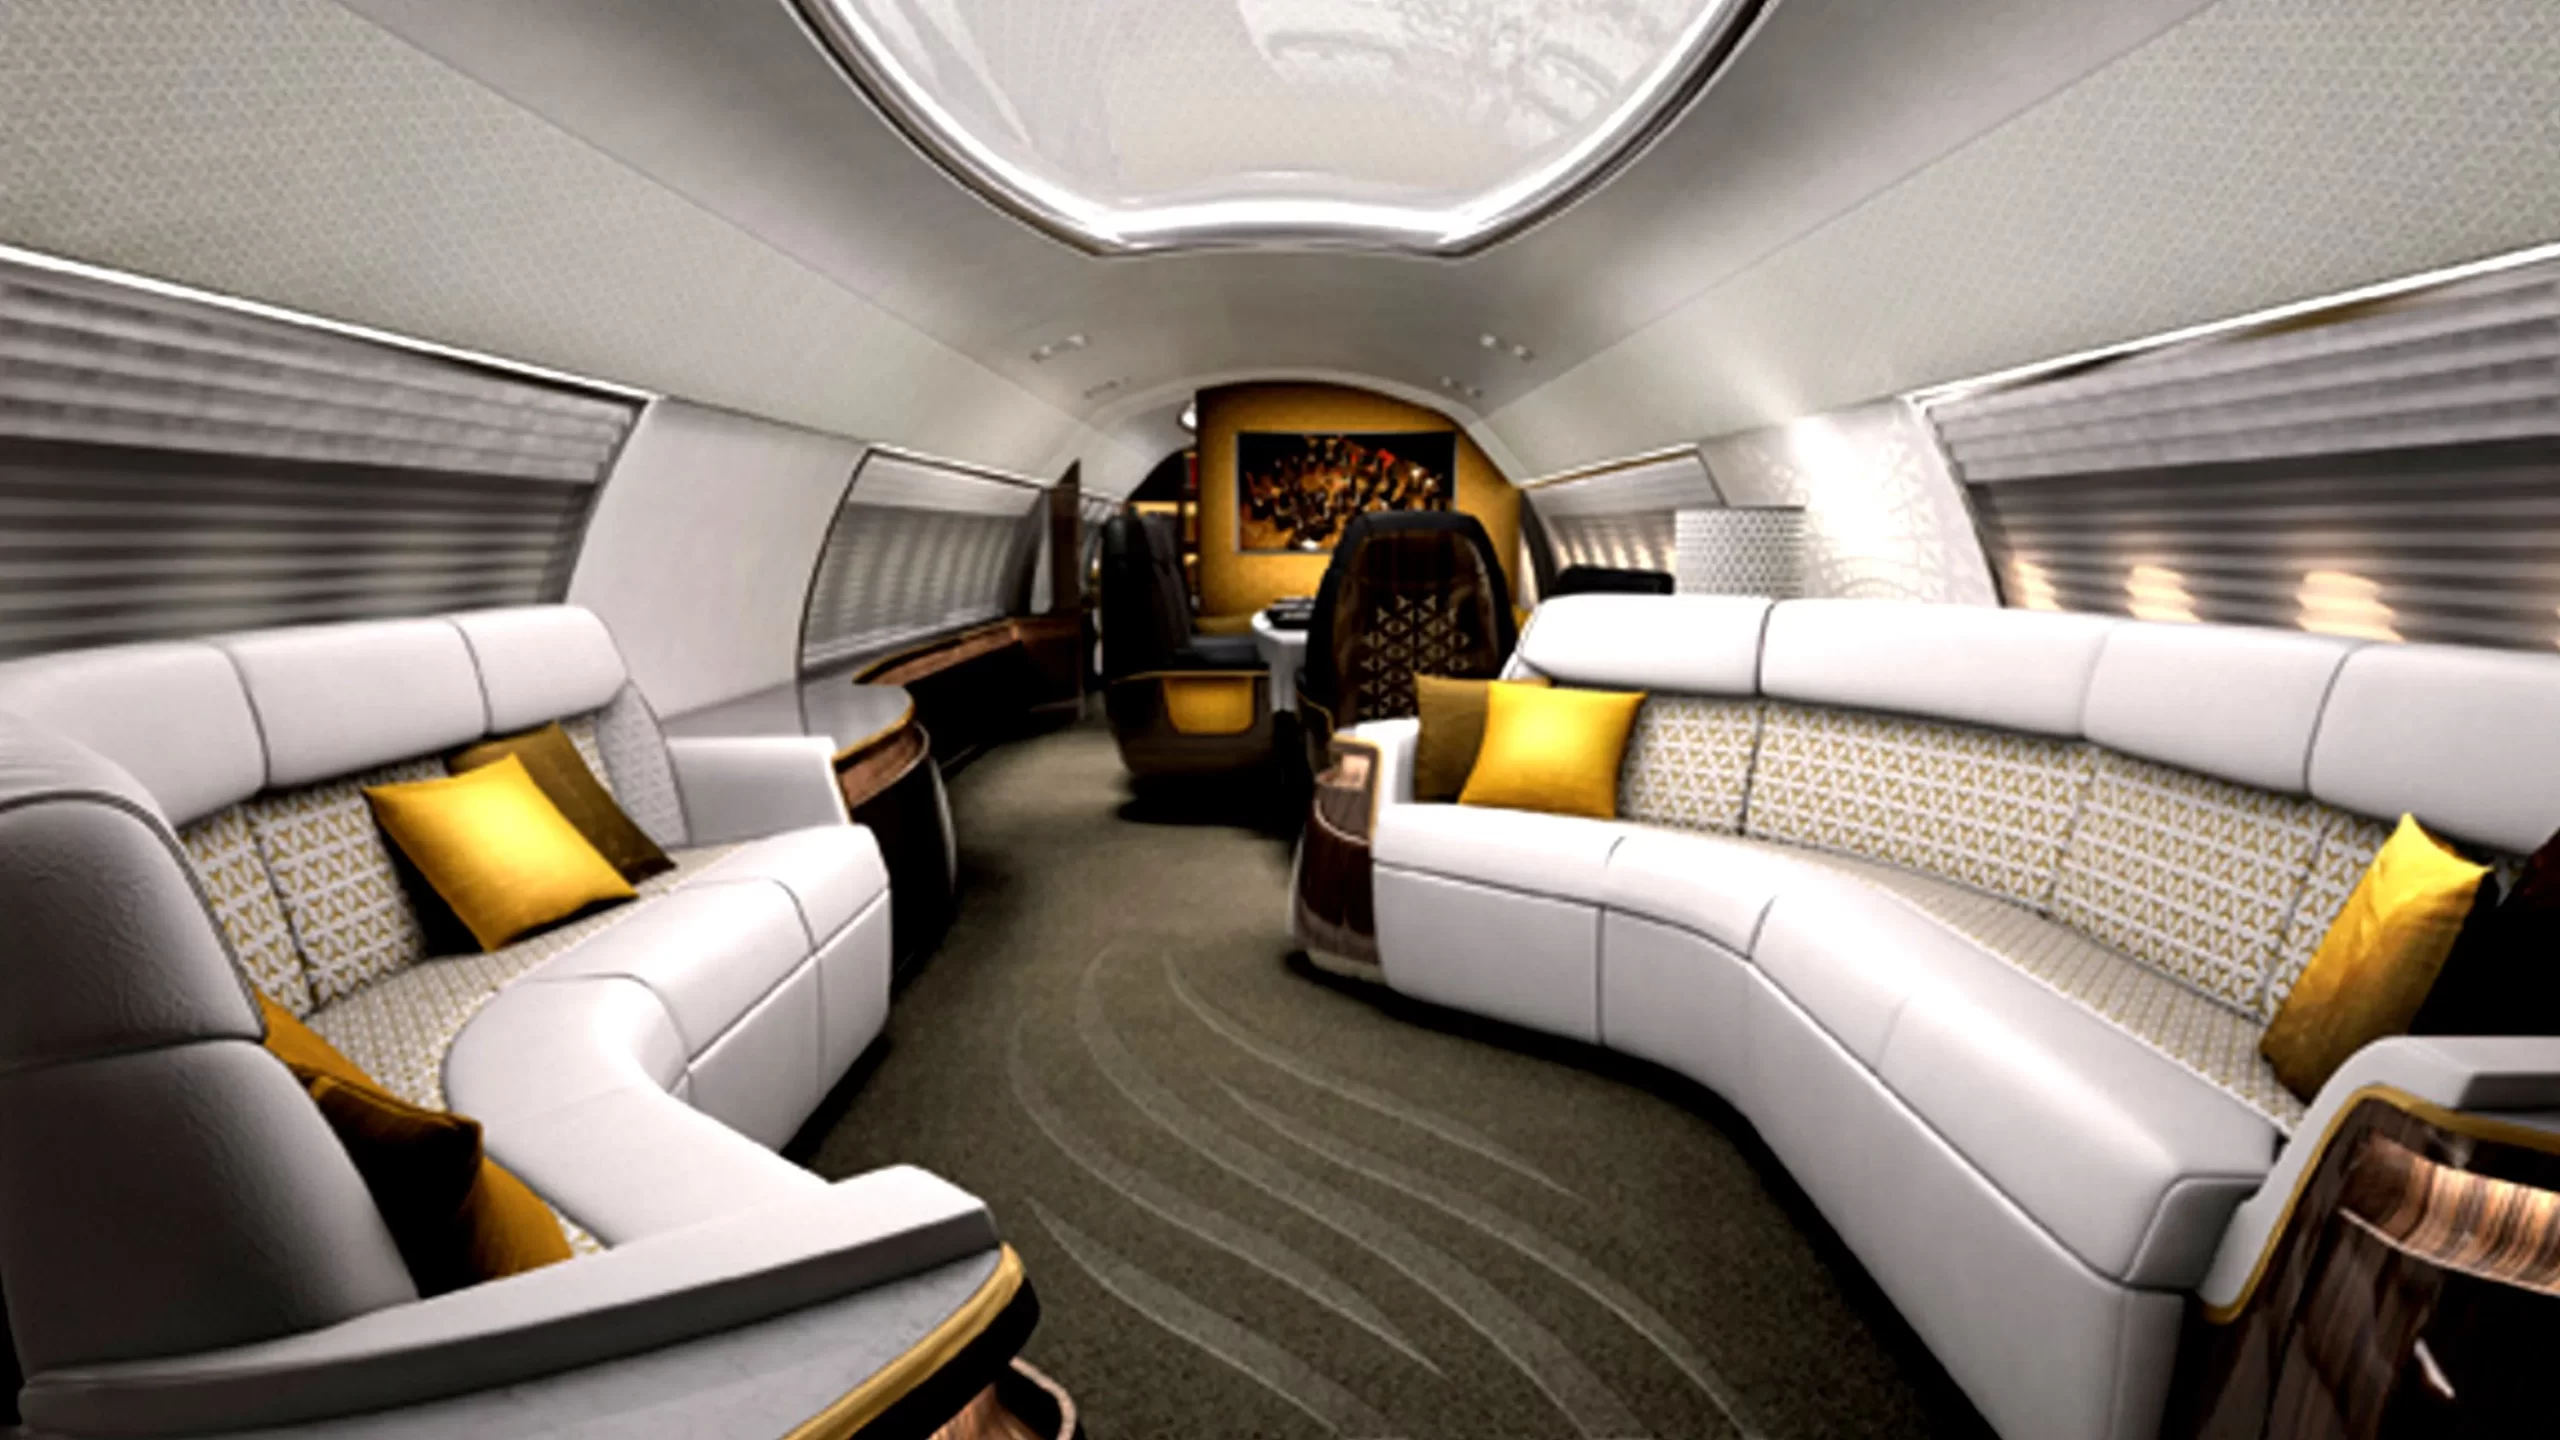 private jet interior design